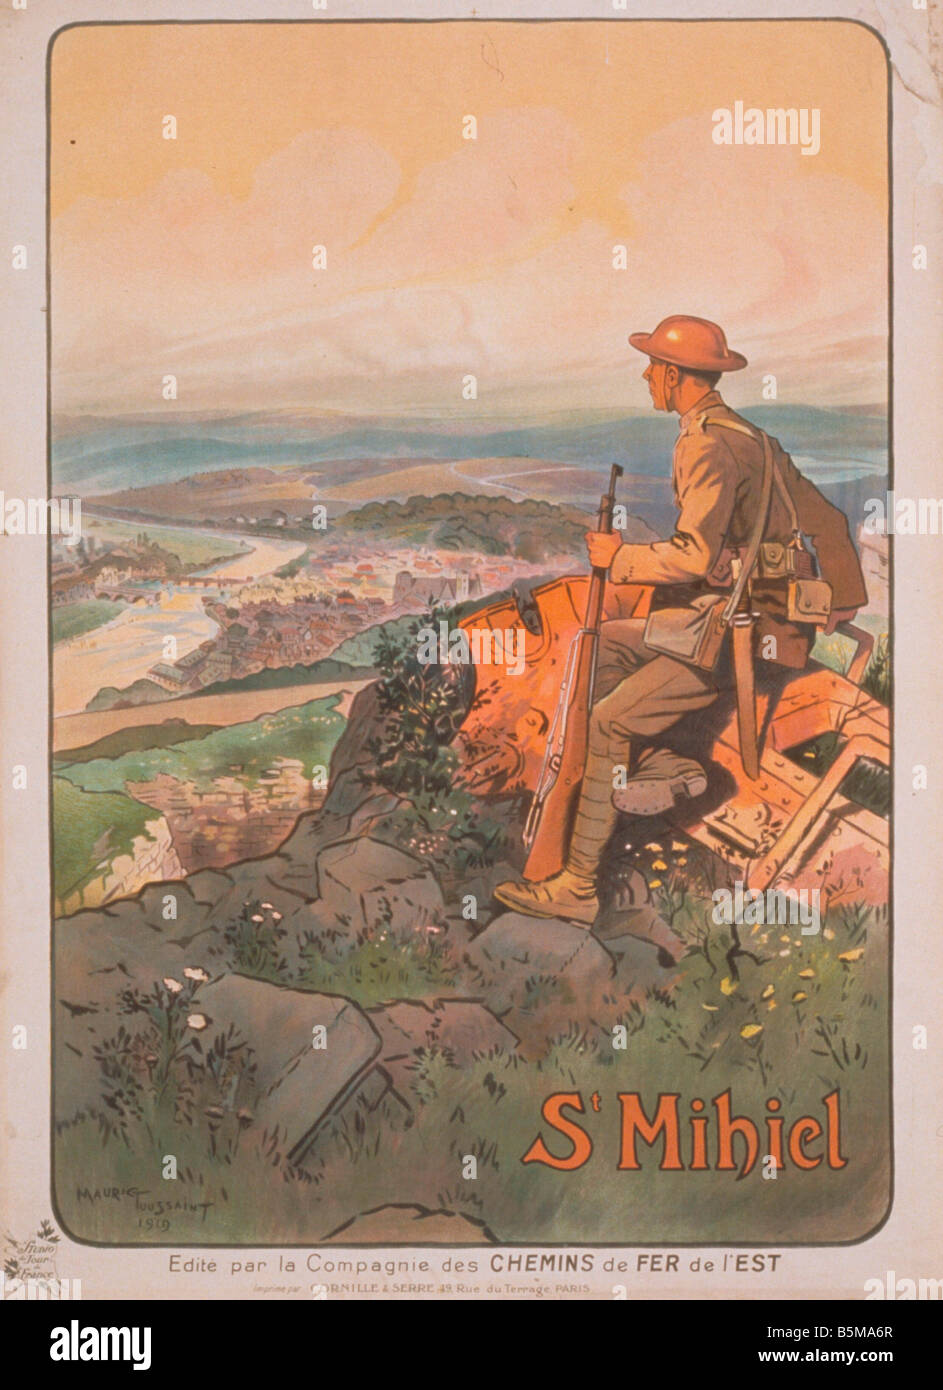 2 G55 P1 1918 58 WW I St Miehiel Französisch Plakat 1919 Geschichte Erster weltkrieg Propaganda St. Mihiel US-Soldat auf einem Hügel auf der Suche Stockfoto